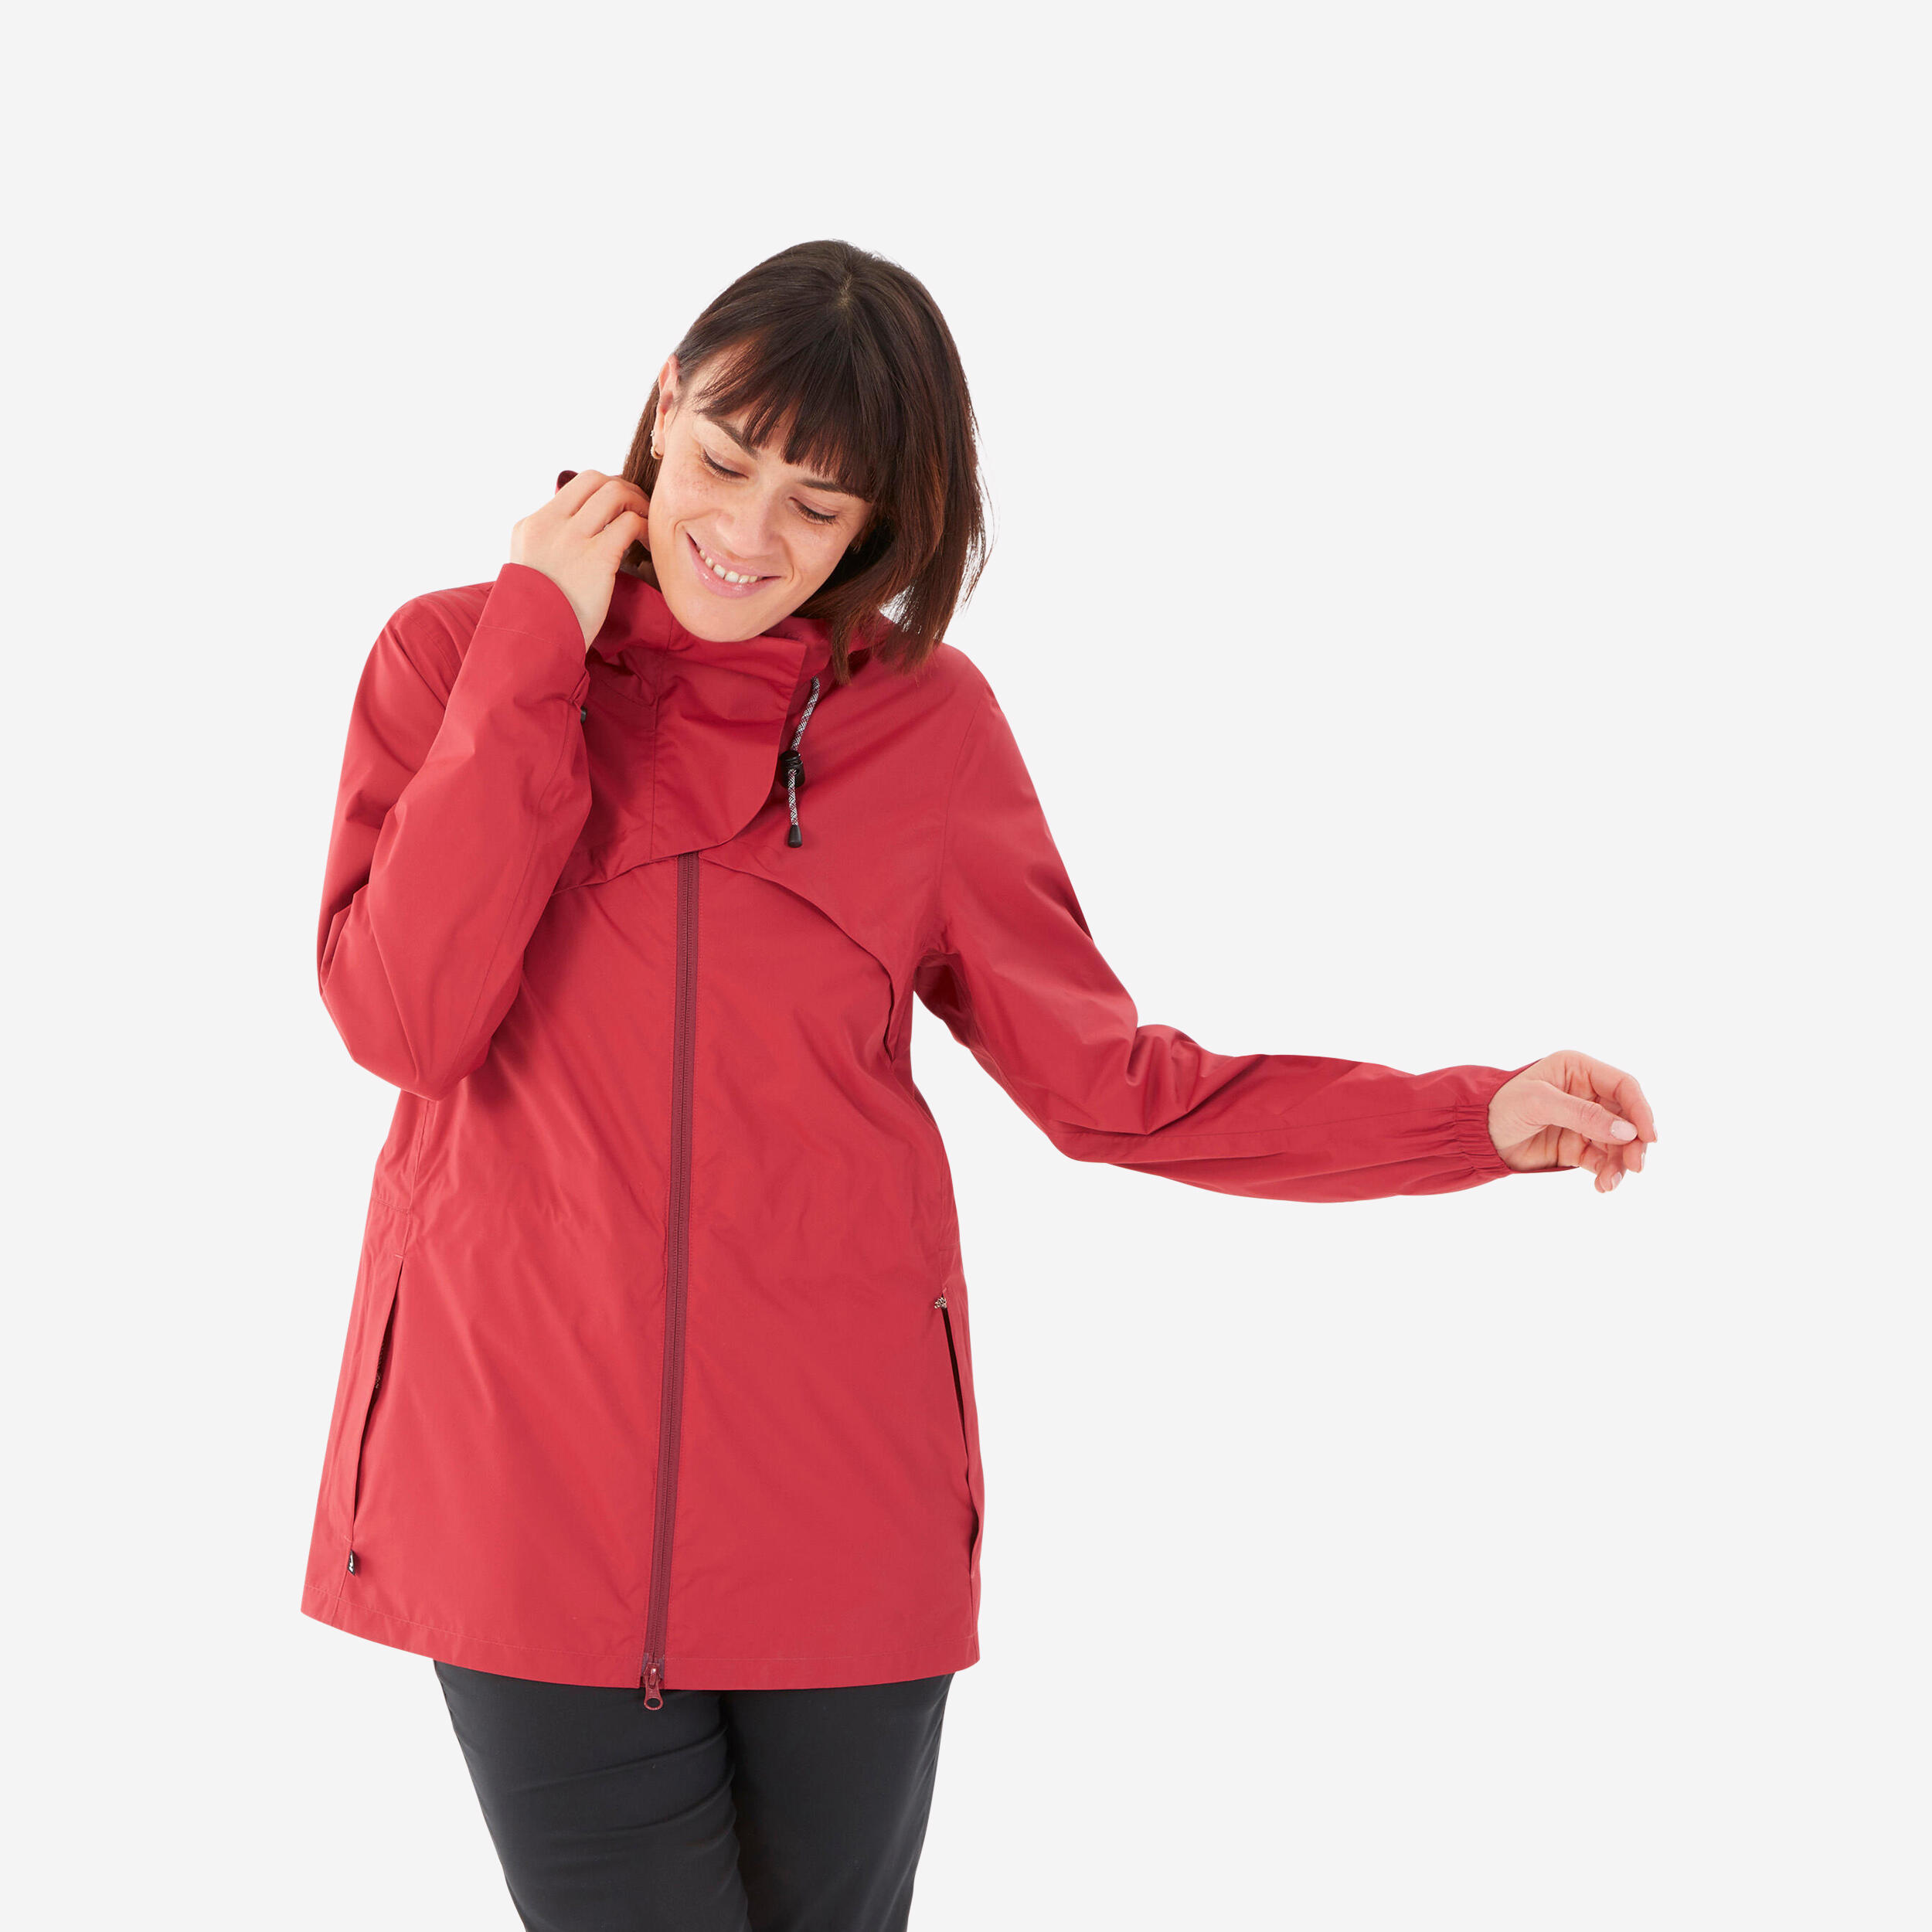 Hiking Raincoat - NH500 Waterproof Jacket - Women - Ruby Red 1/9